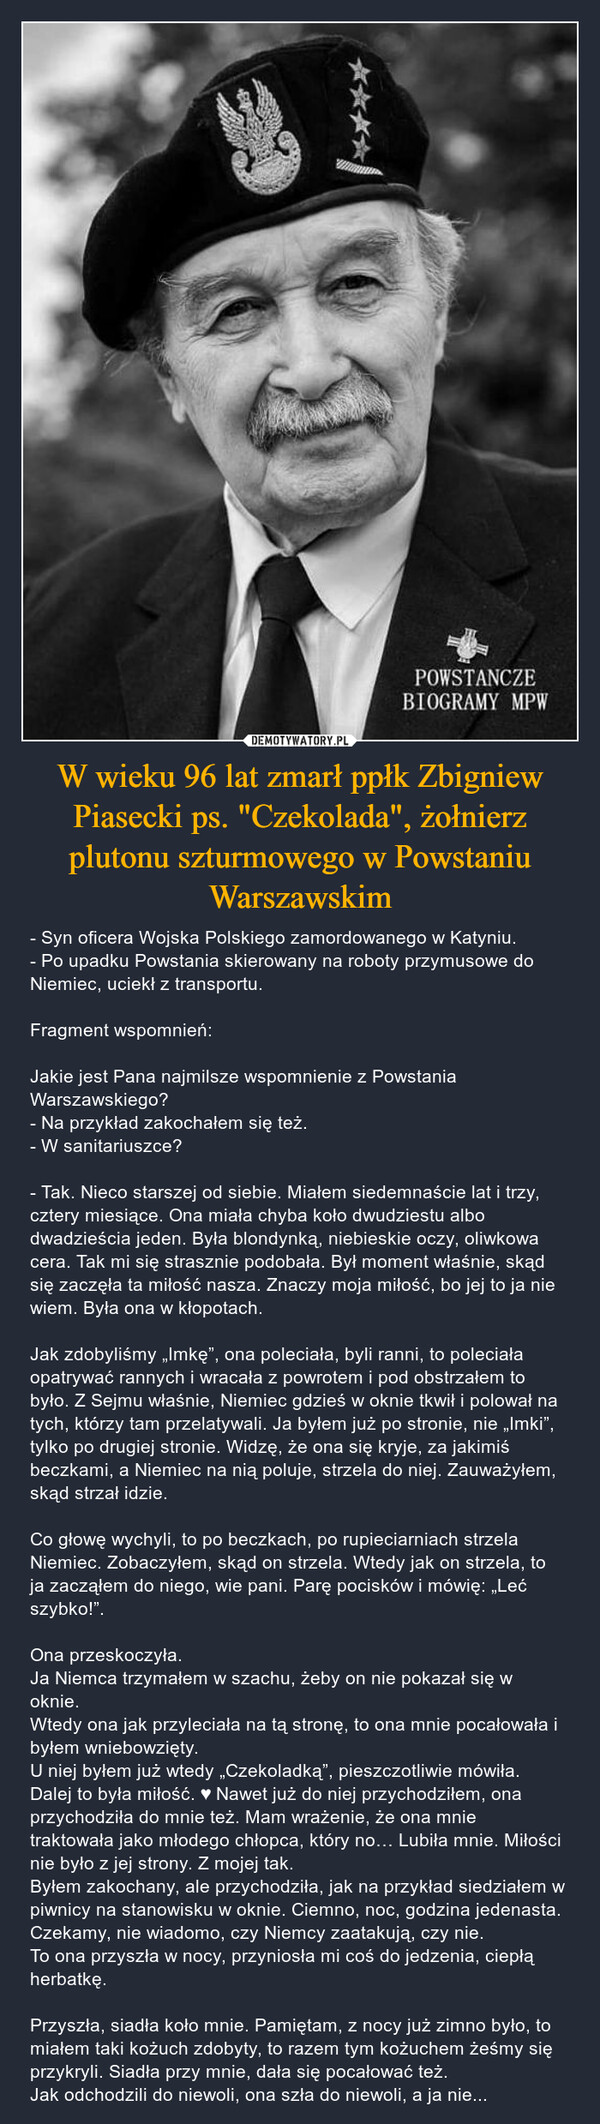 W wieku 96 lat zmarł ppłk Zbigniew Piasecki ps. "Czekolada", żołnierz plutonu szturmowego w Powstaniu Warszawskim